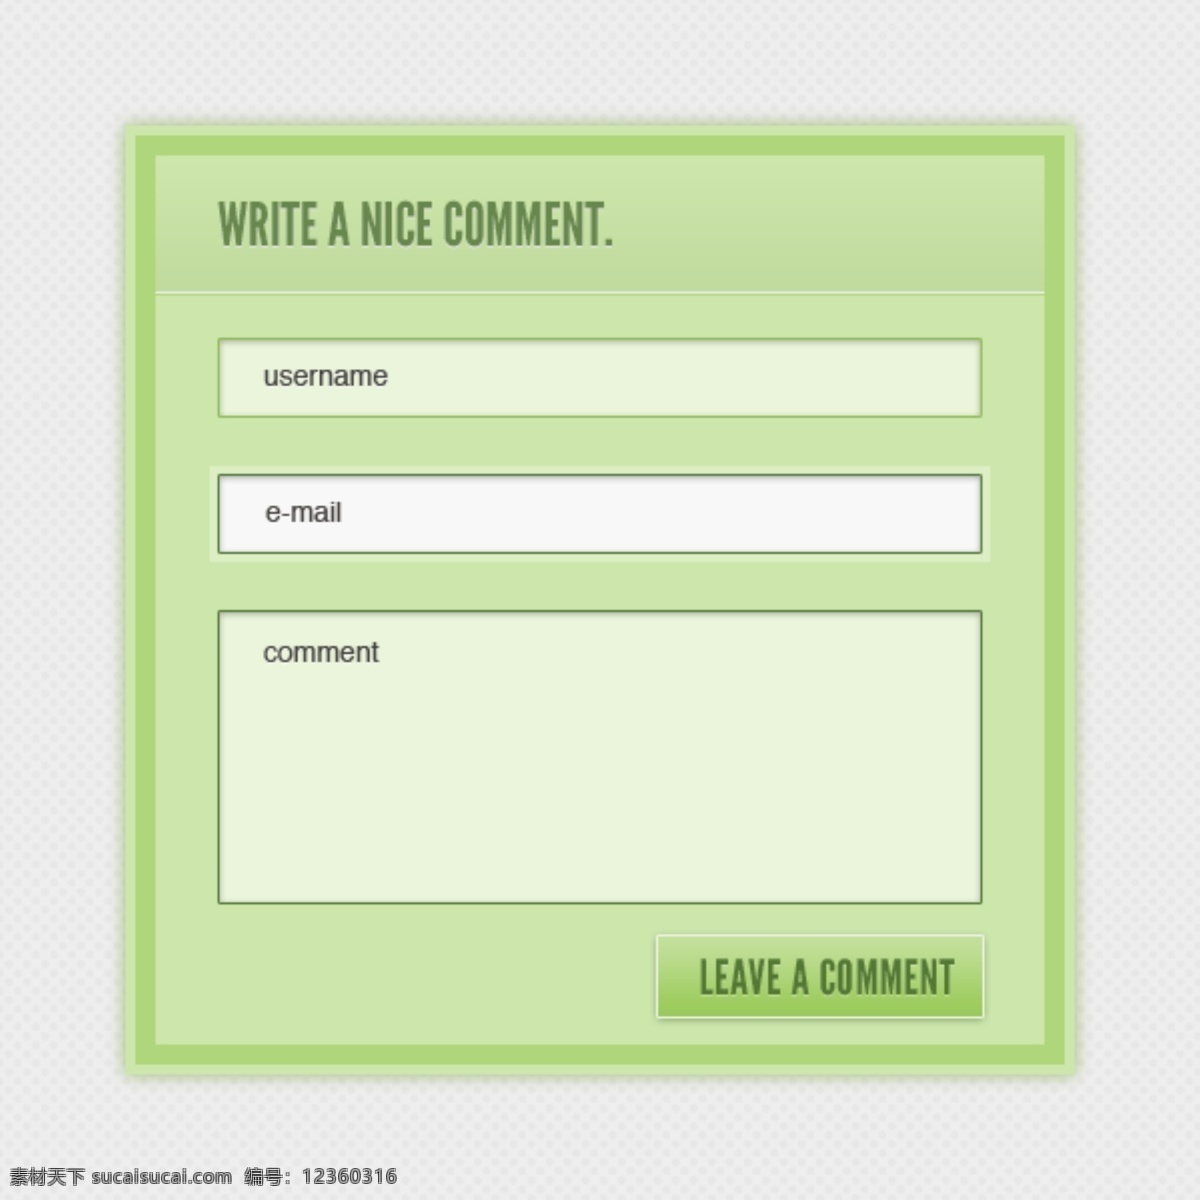 清洁 绿色 评论 形式 接口 创意 高分辨率 免费 箱 用户界面 时尚的 现代的 独特的 原始的 新的 简单的 hd 元素 ui元素 详细的 评论形式 电子邮件 矢量图